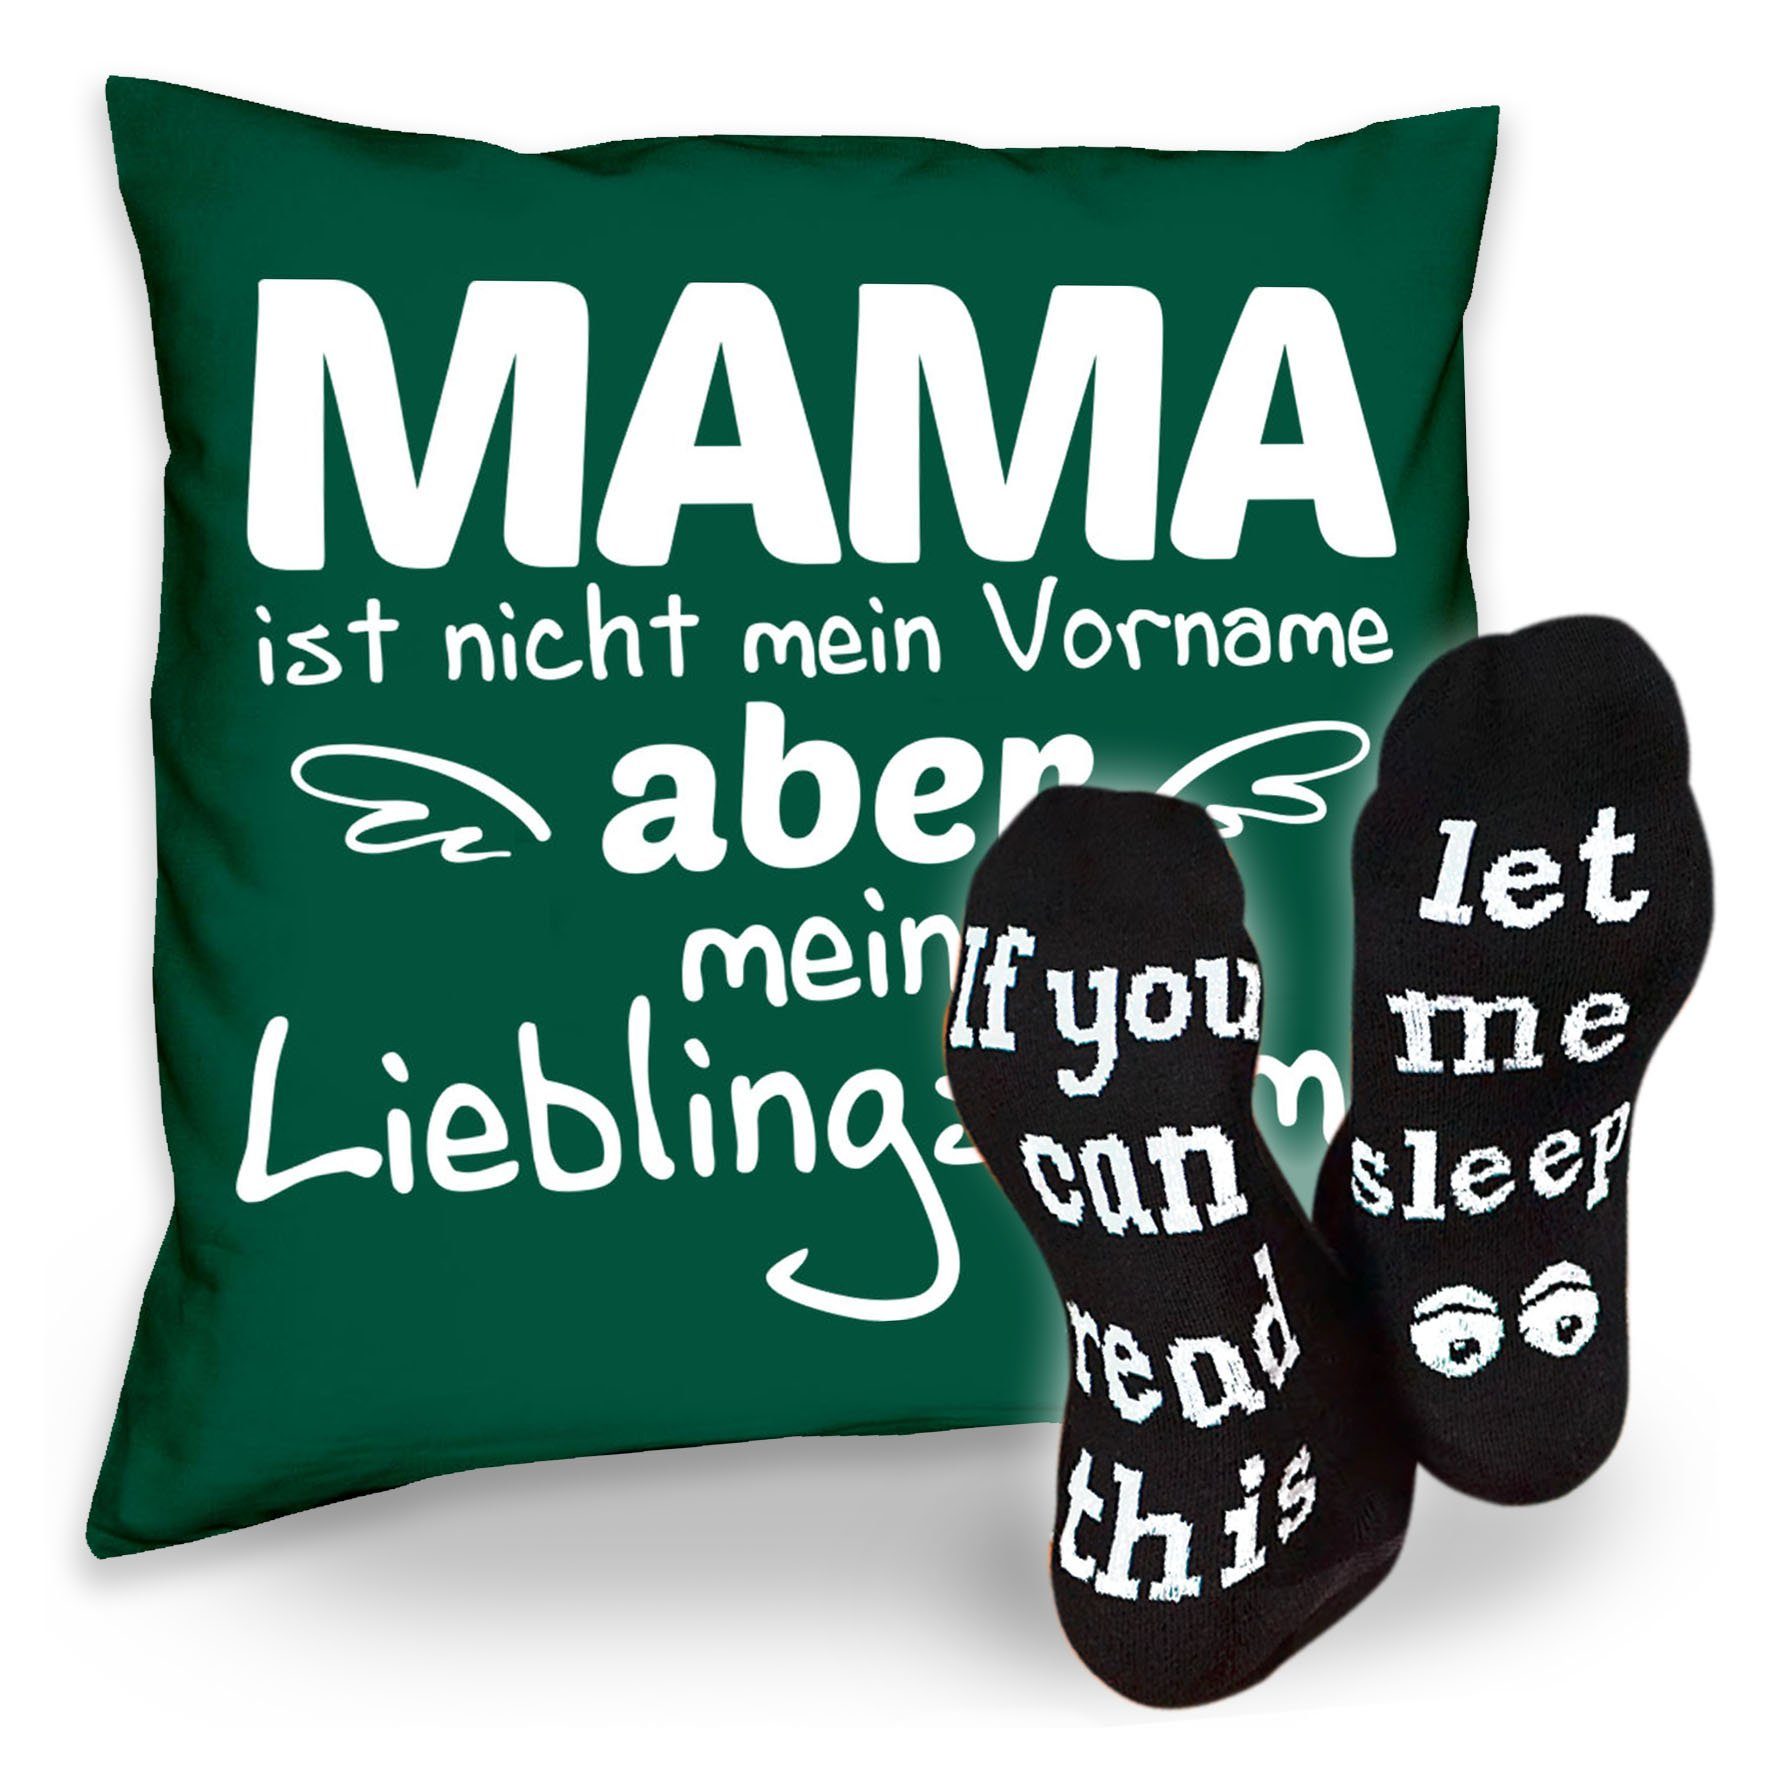 Mama Lieblingsname & Sleep, Dekokissen Geburtstag Sprüche Weihnachten Geschenke Muttertag Kissen Socken Soreso® dunkelgrün